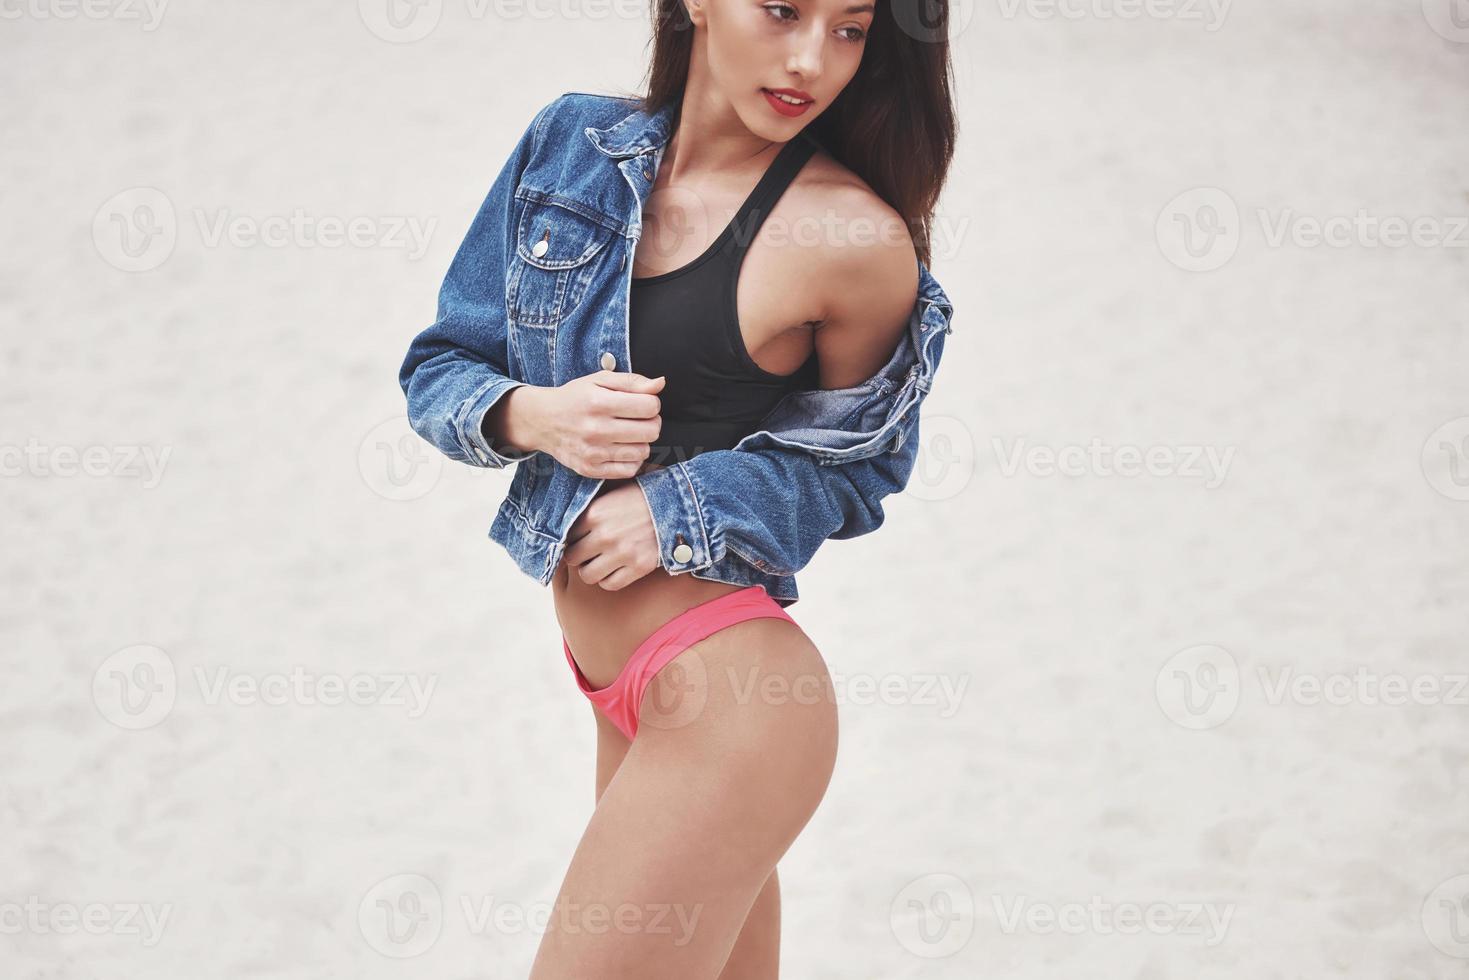 mooi slank luxe meisje in bikini en jeans jaket op het zandstrand op een tropisch eiland. sexy gebruind lichaam en perfect figuur foto